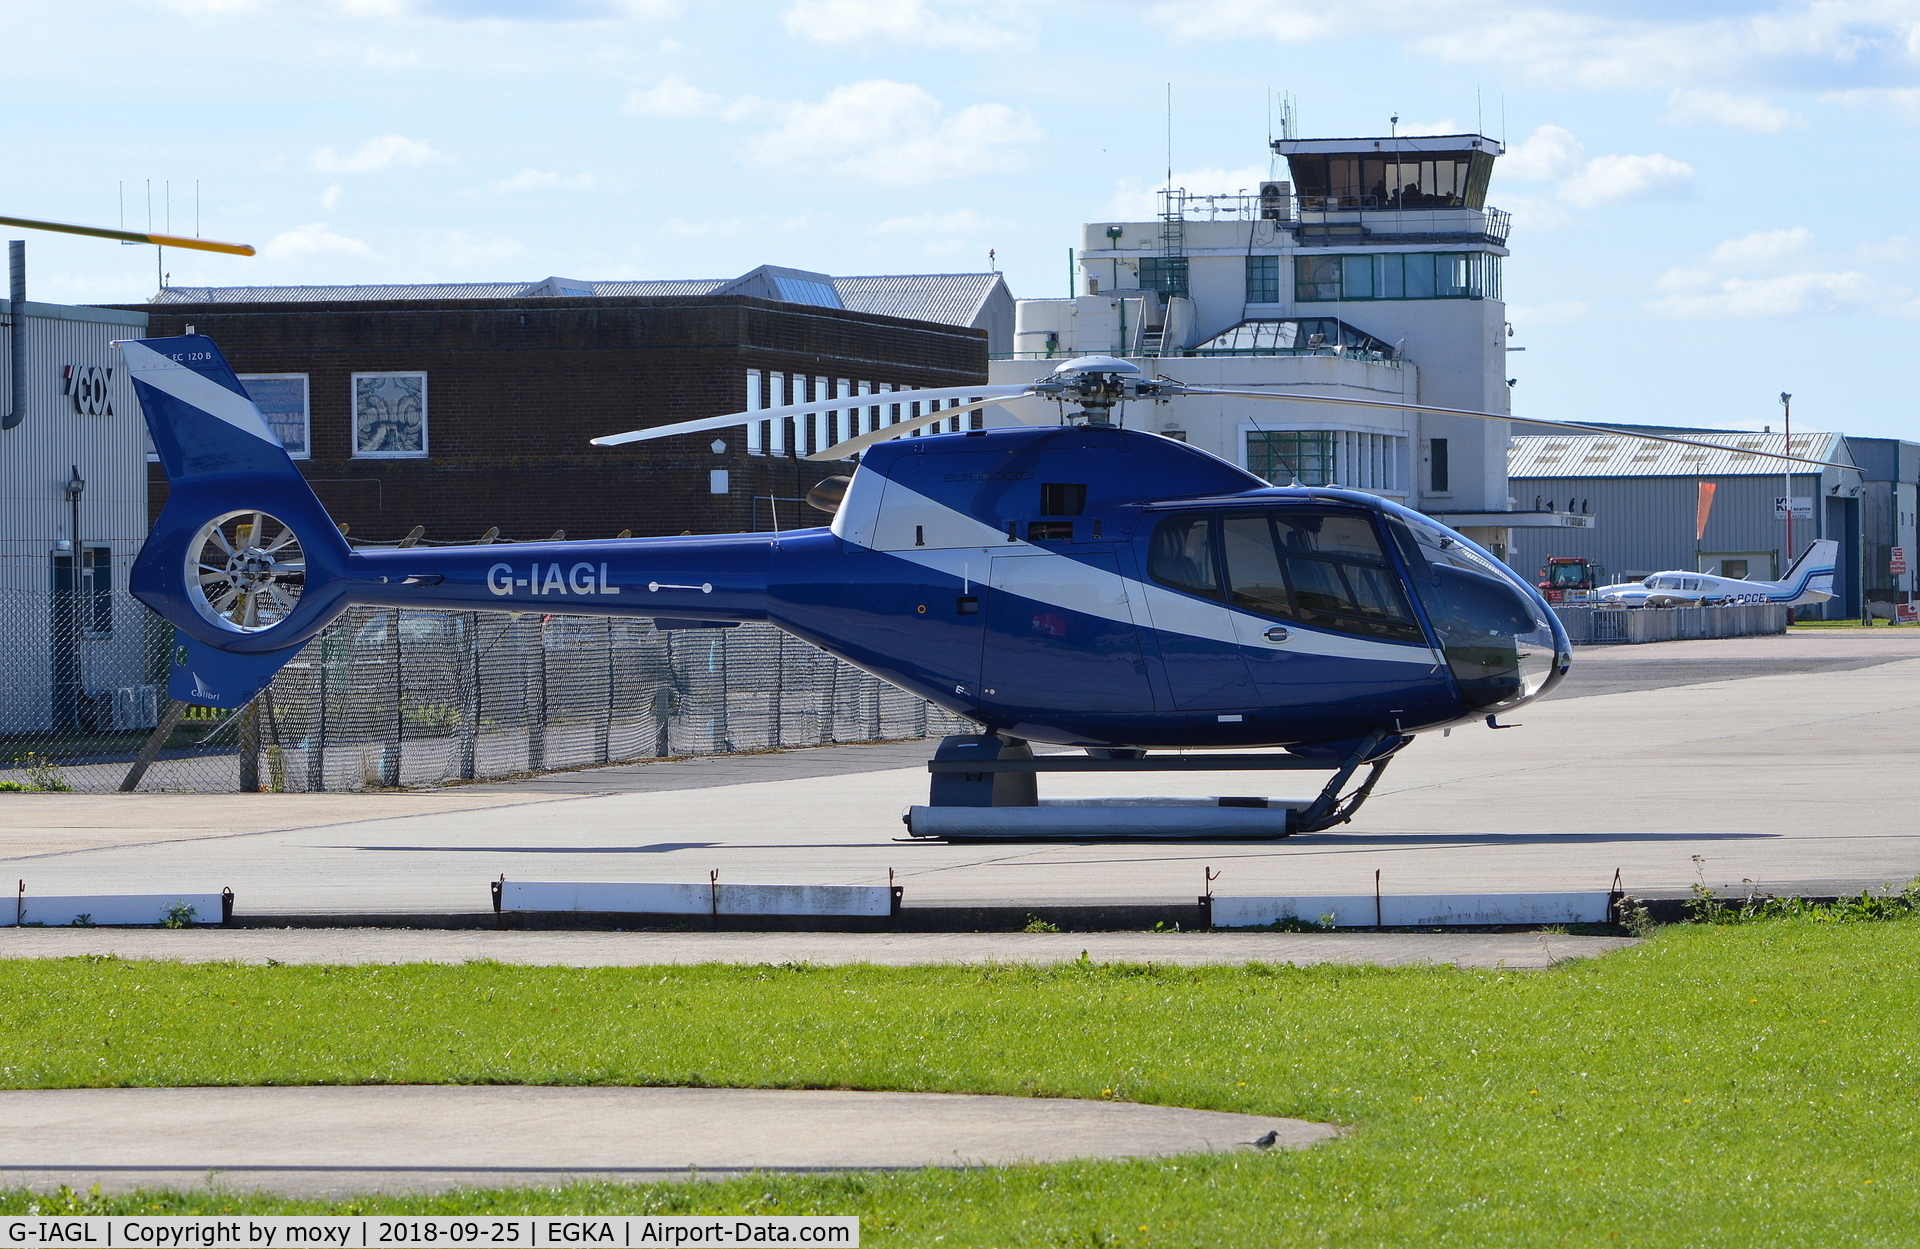 G-IAGL, 2008 Eurocopter EC-120B Colibri C/N 1565, Eurocopter EC-120B Colibri at Shoreham. Ex SX-HVR